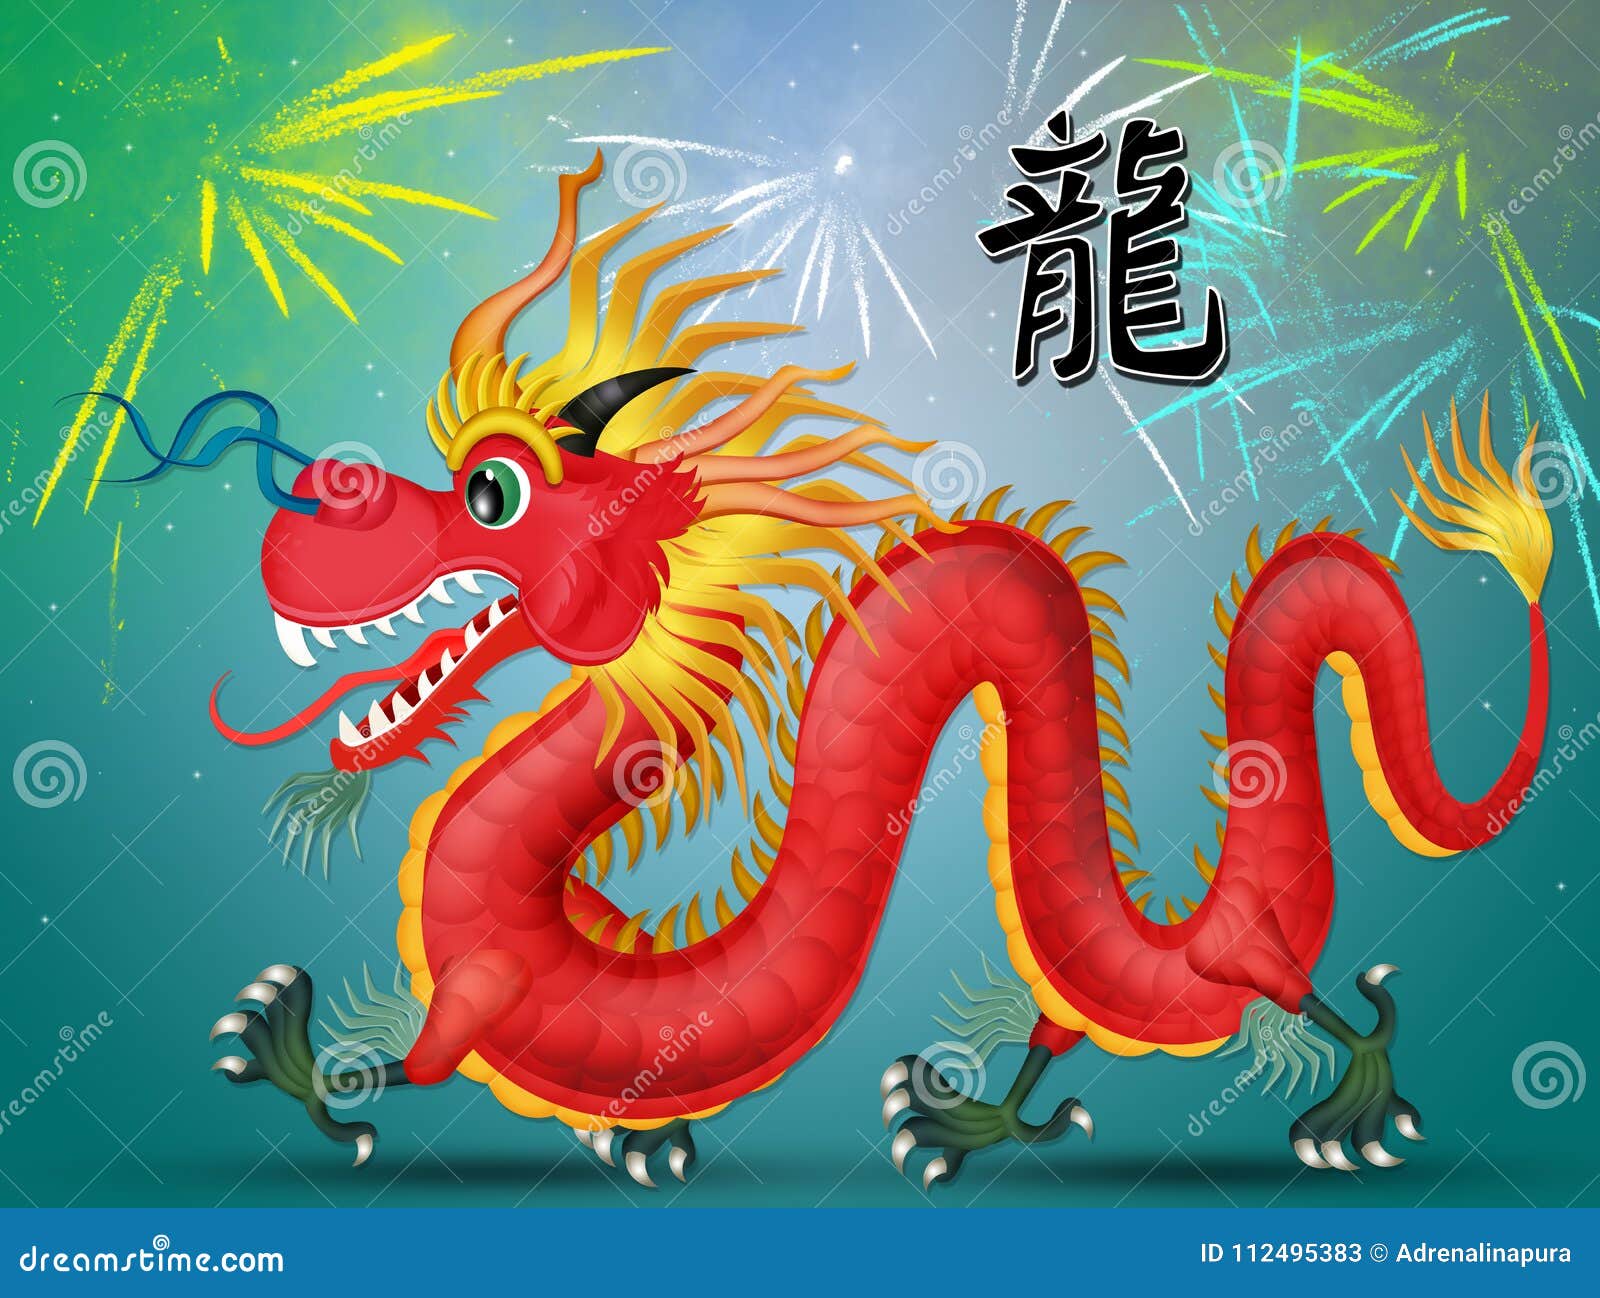 Китайский новый год дракон рисунок